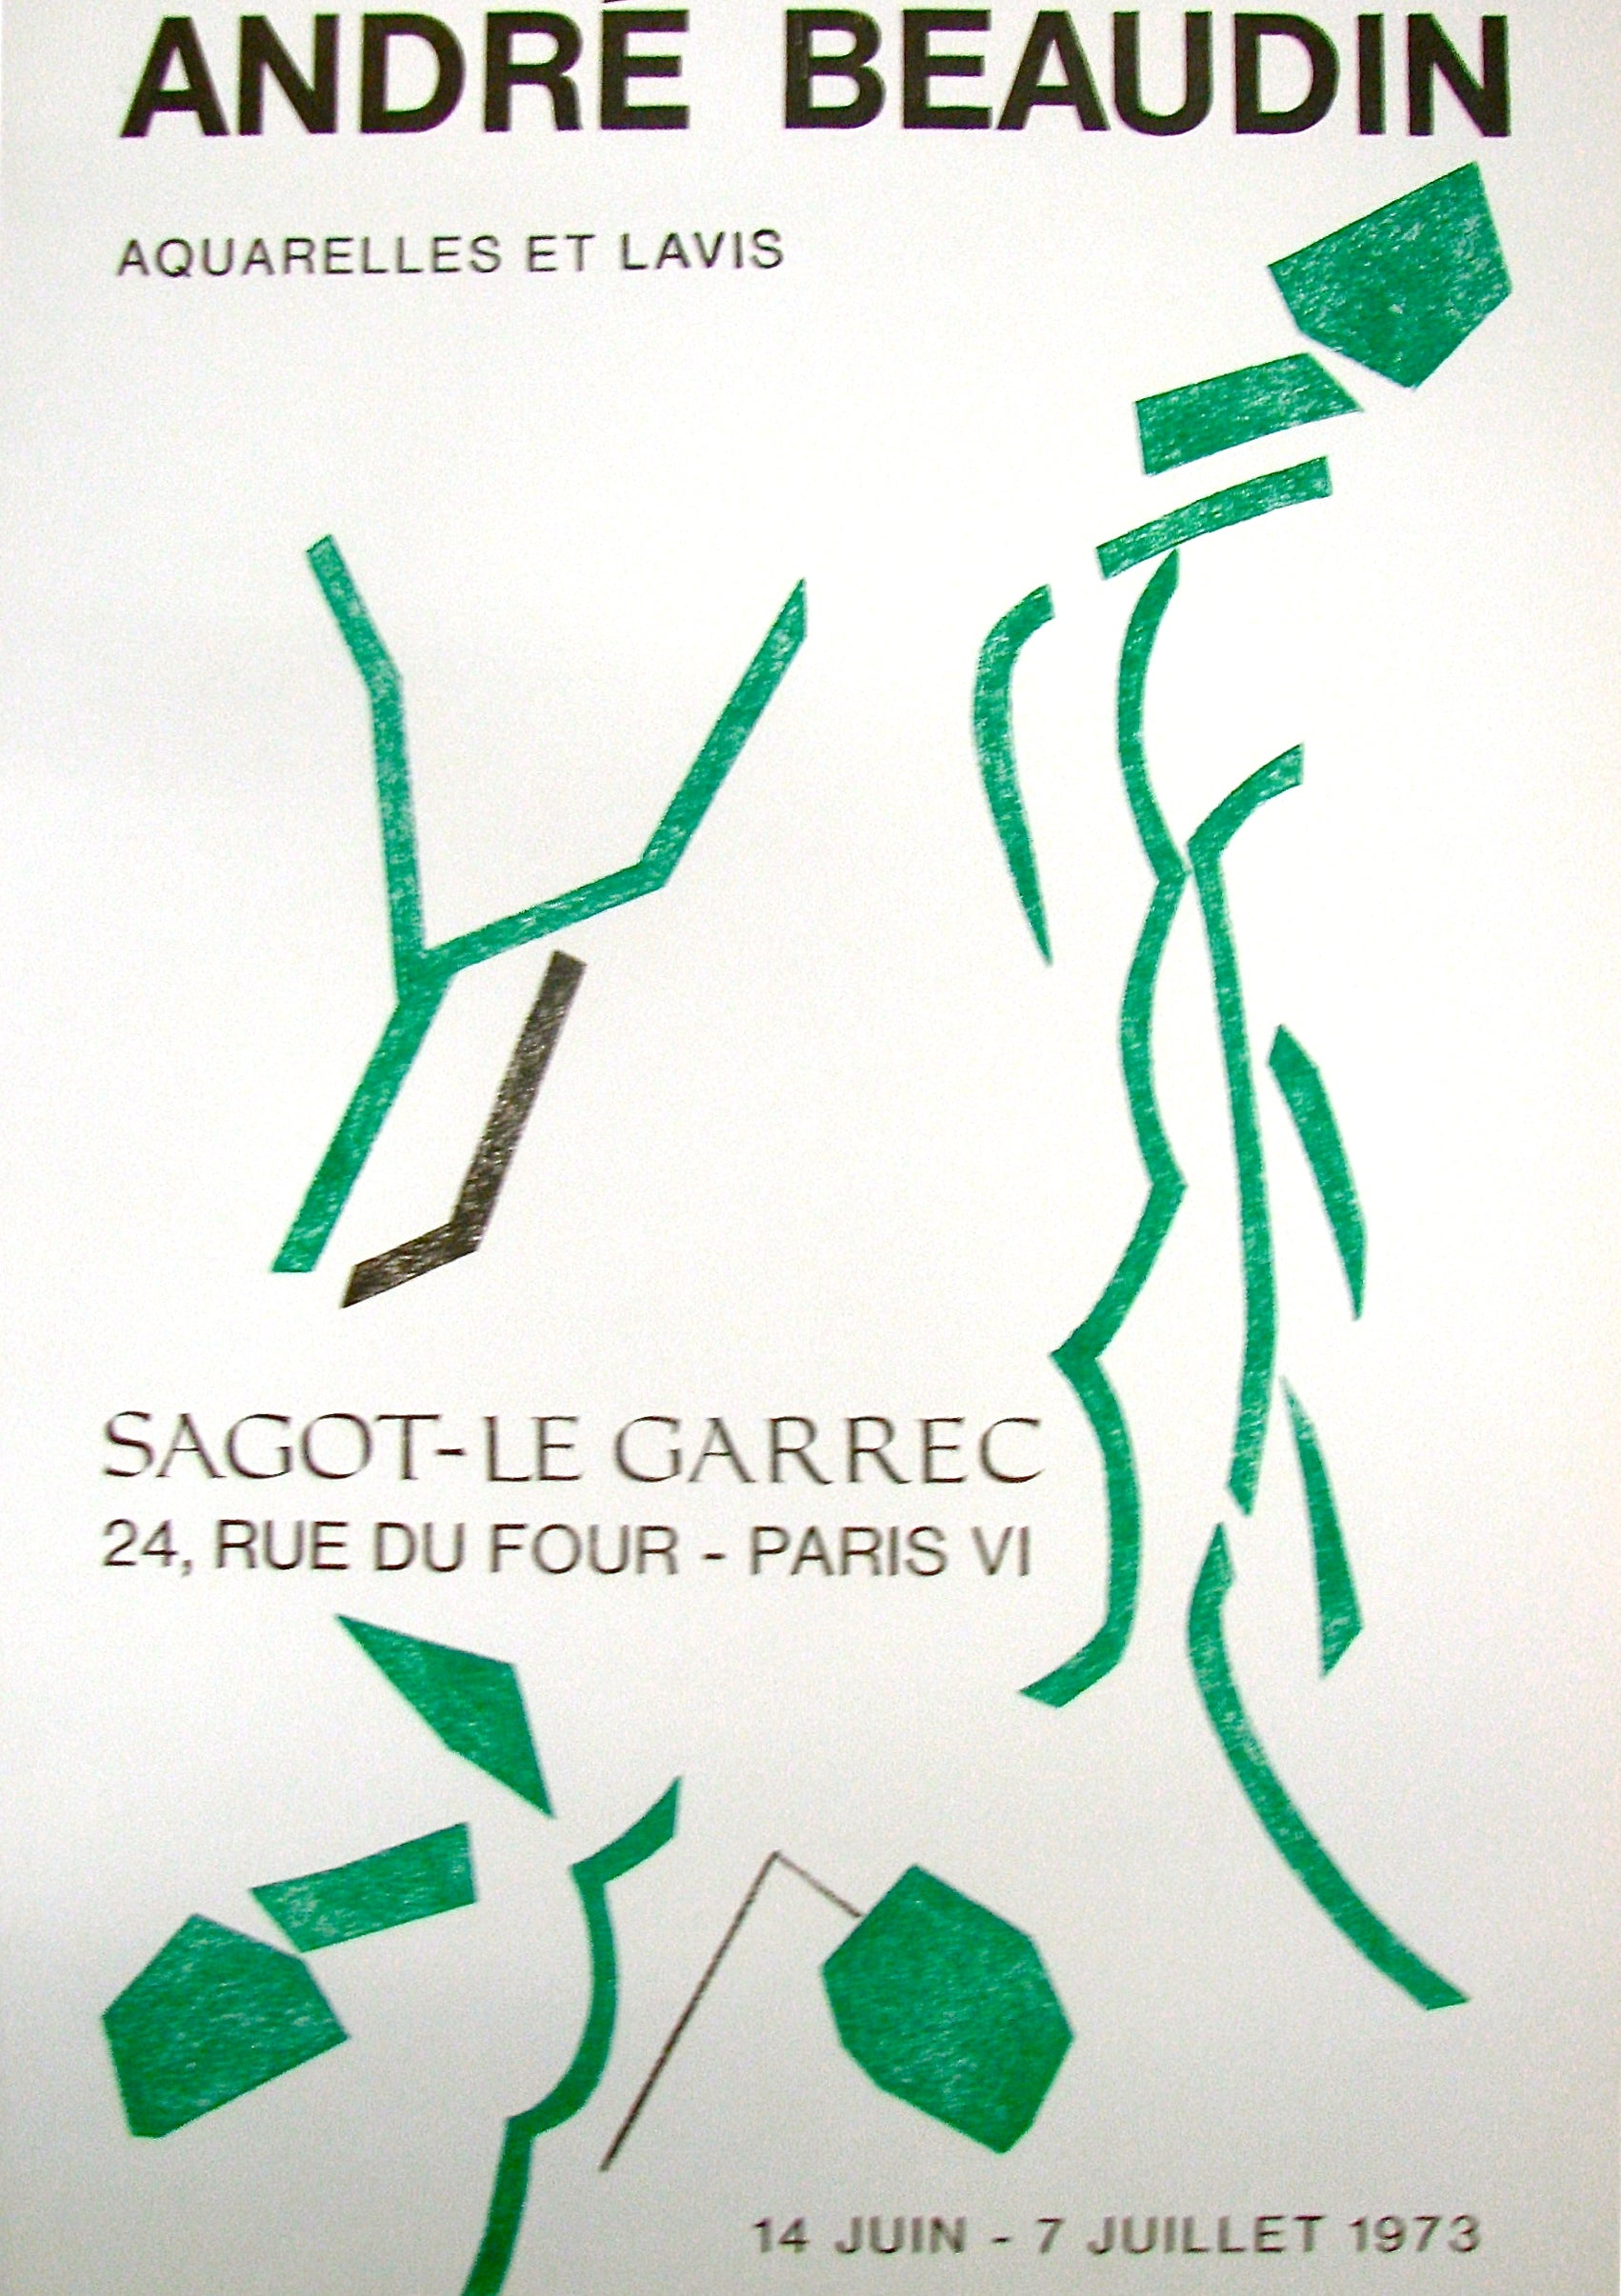 Acquarelles et Lavis - Sagot-Le Garrec by André Beaudin, 1973 - Mourlot Editions - Fine_Art - Poster - Lithograph - Wall Art - Vintage - Prints - Original